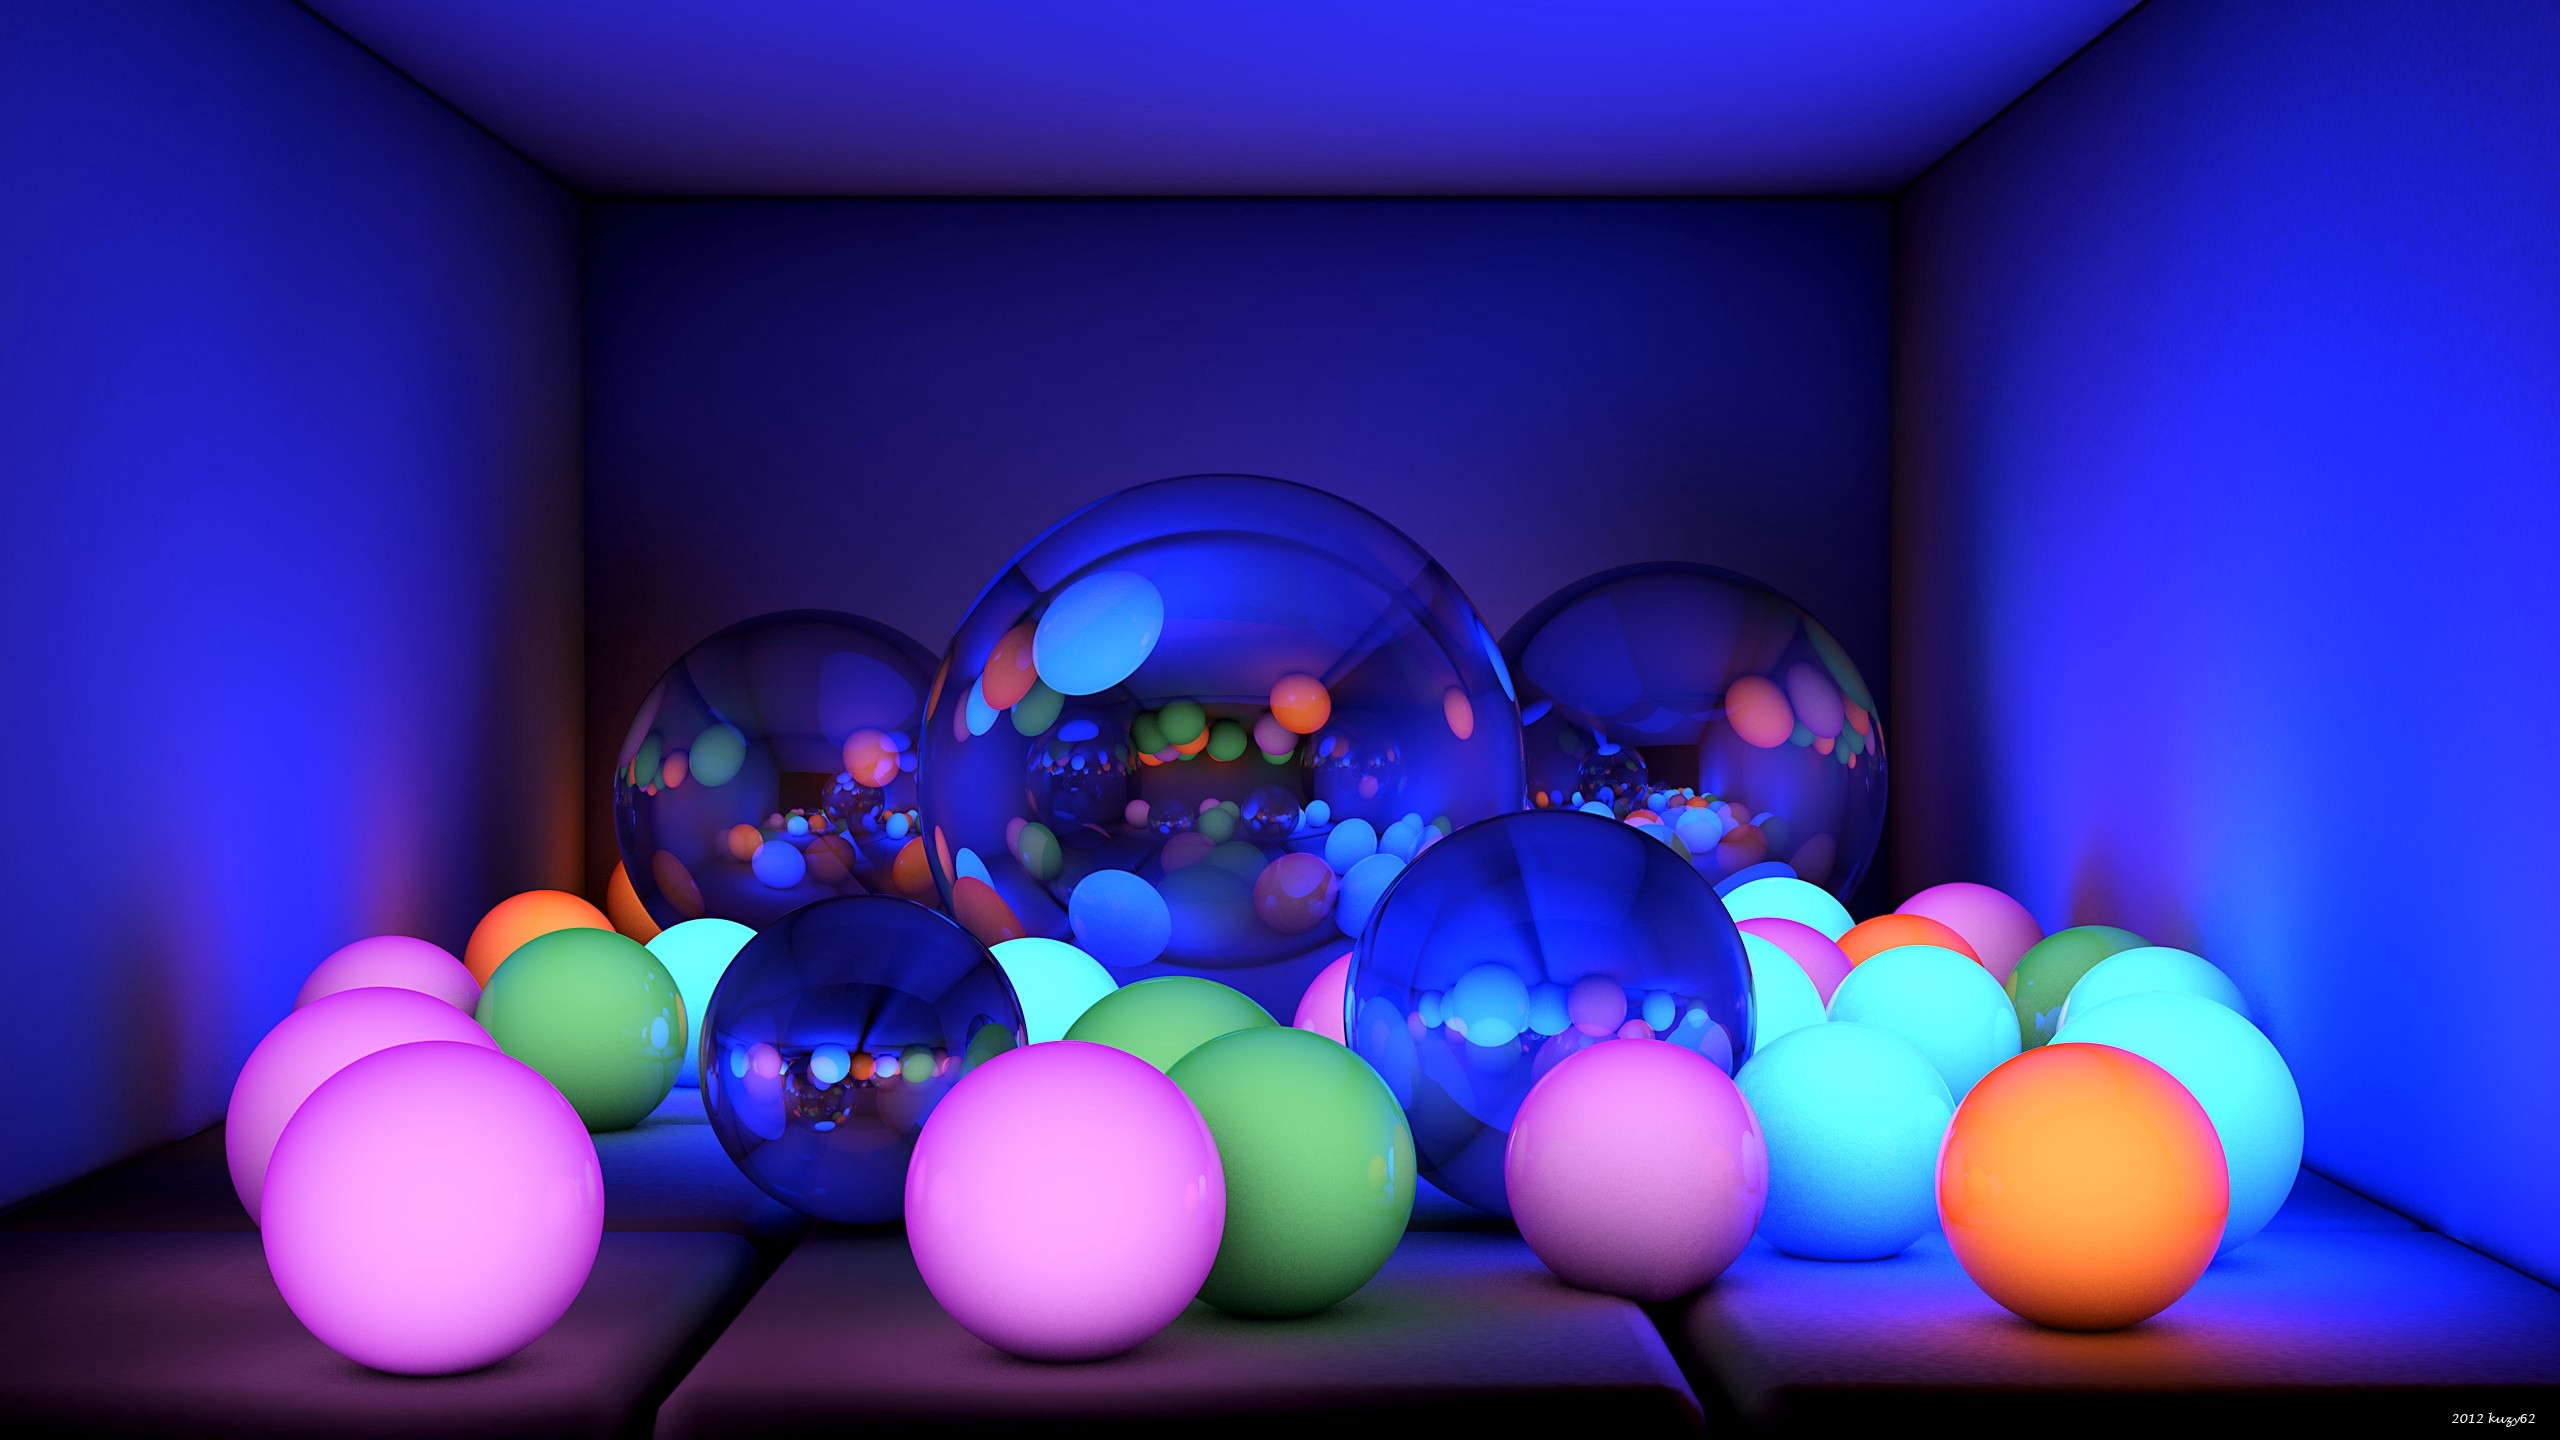 Wallpaper Balls, Size, Neon, Glow - Size 2560 X 1440 - HD Wallpaper 